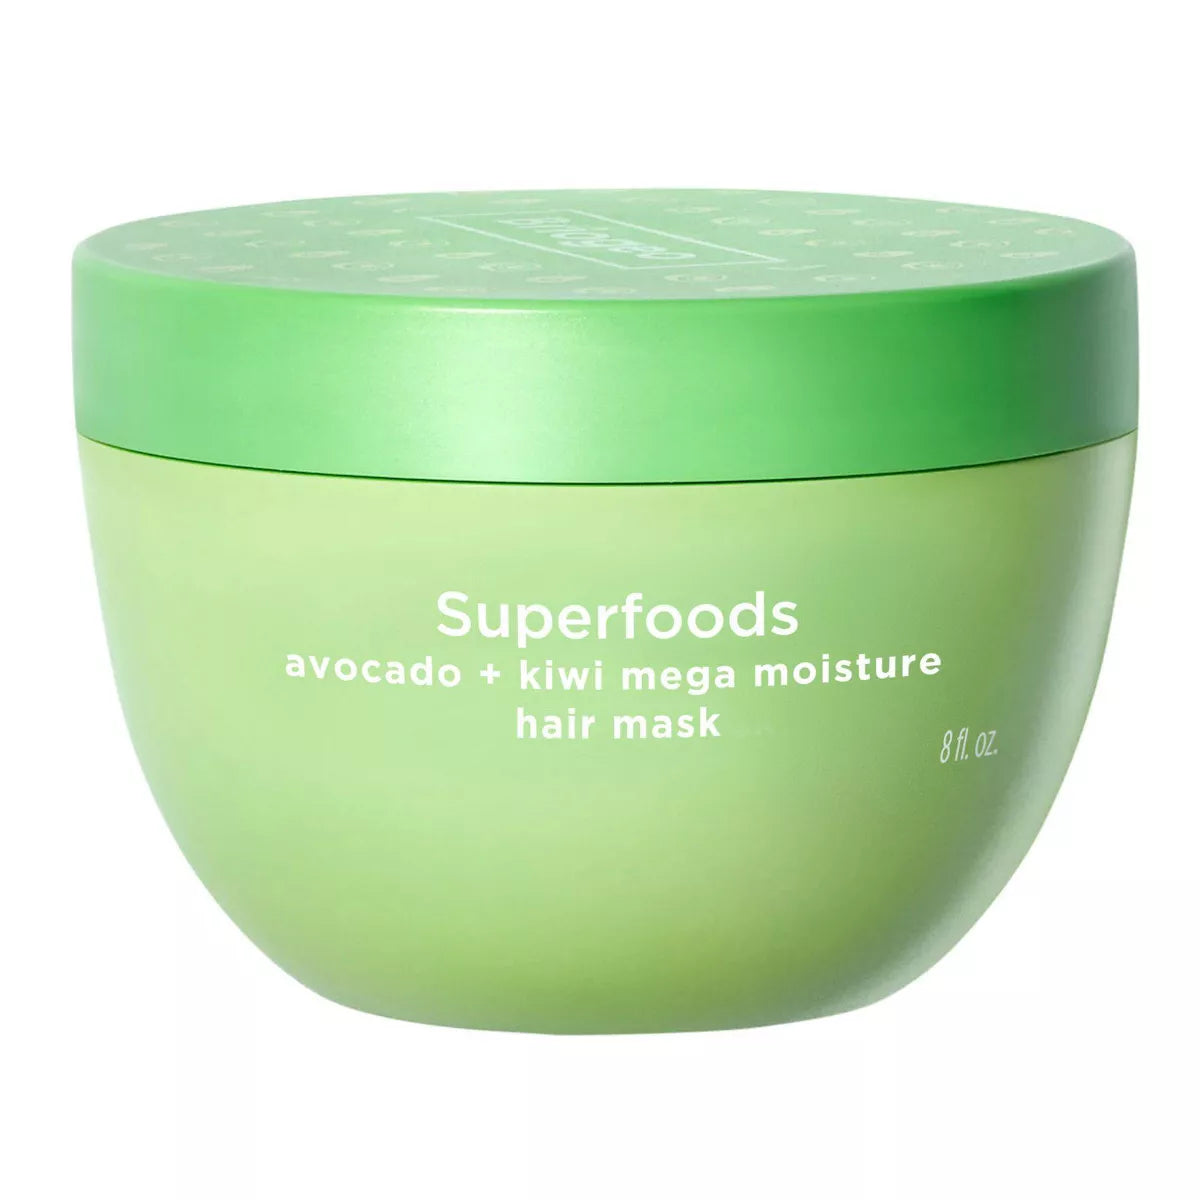 Superfoods Avocado + Kiwi Mega Moisture Superfoods Hair Mask - Ulta Beauty